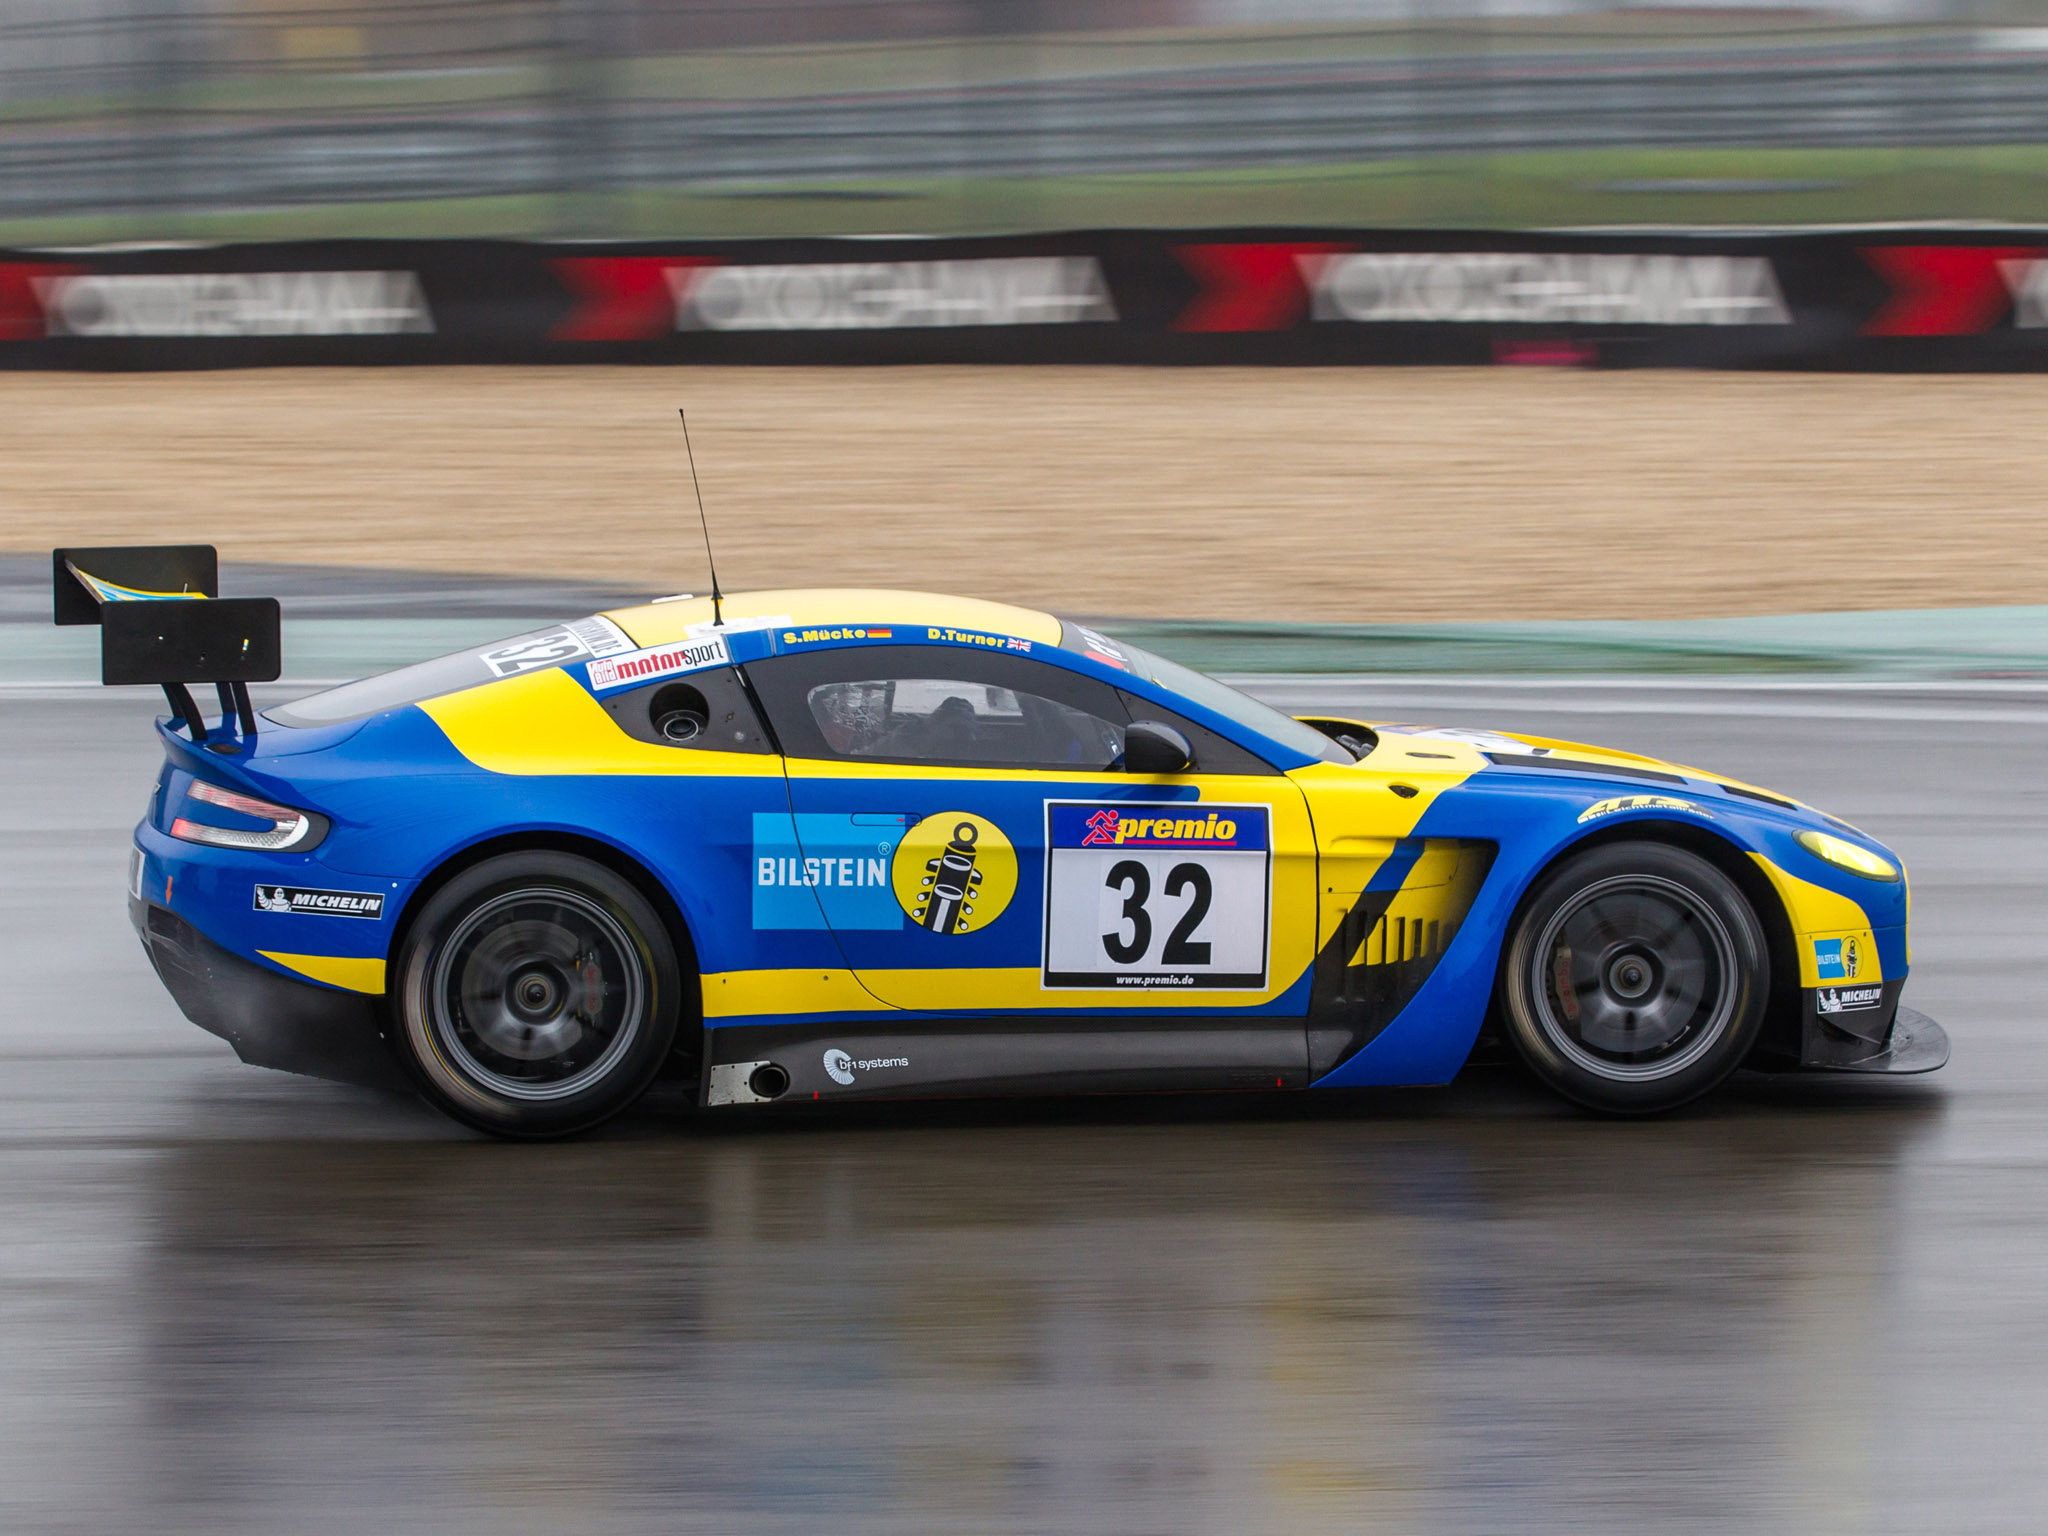 2013, Aston, Martin, V12, Vantage, Gt3, Race, Racing Wallpaper